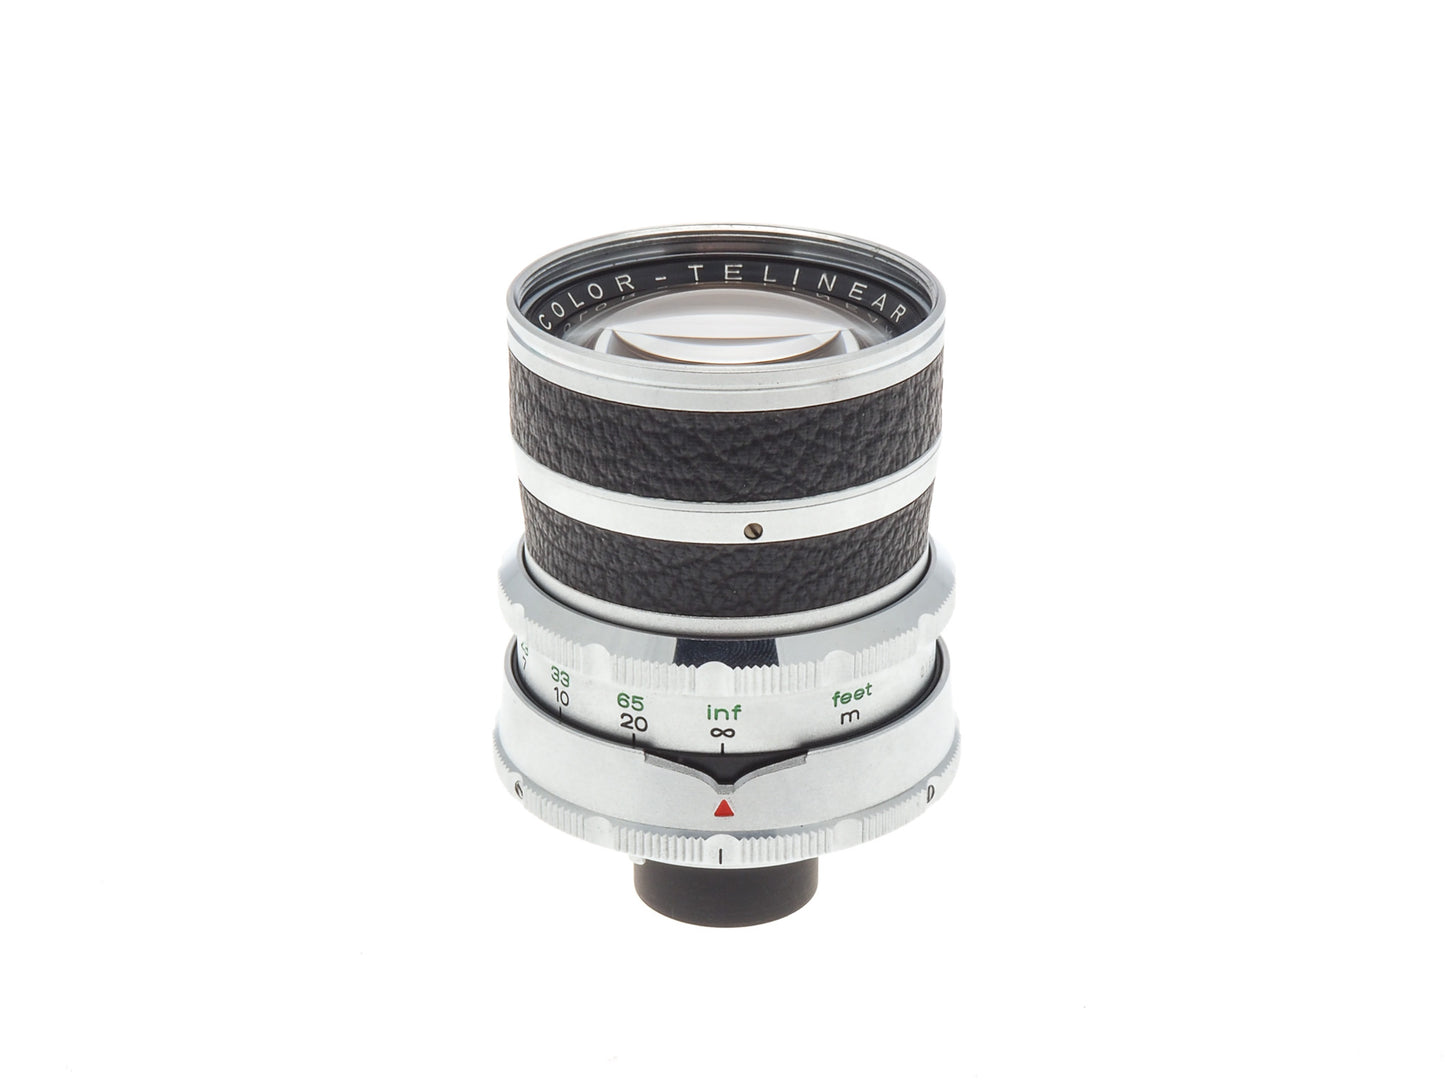 Agfa 135mm f4 Color-Telinear - Lens